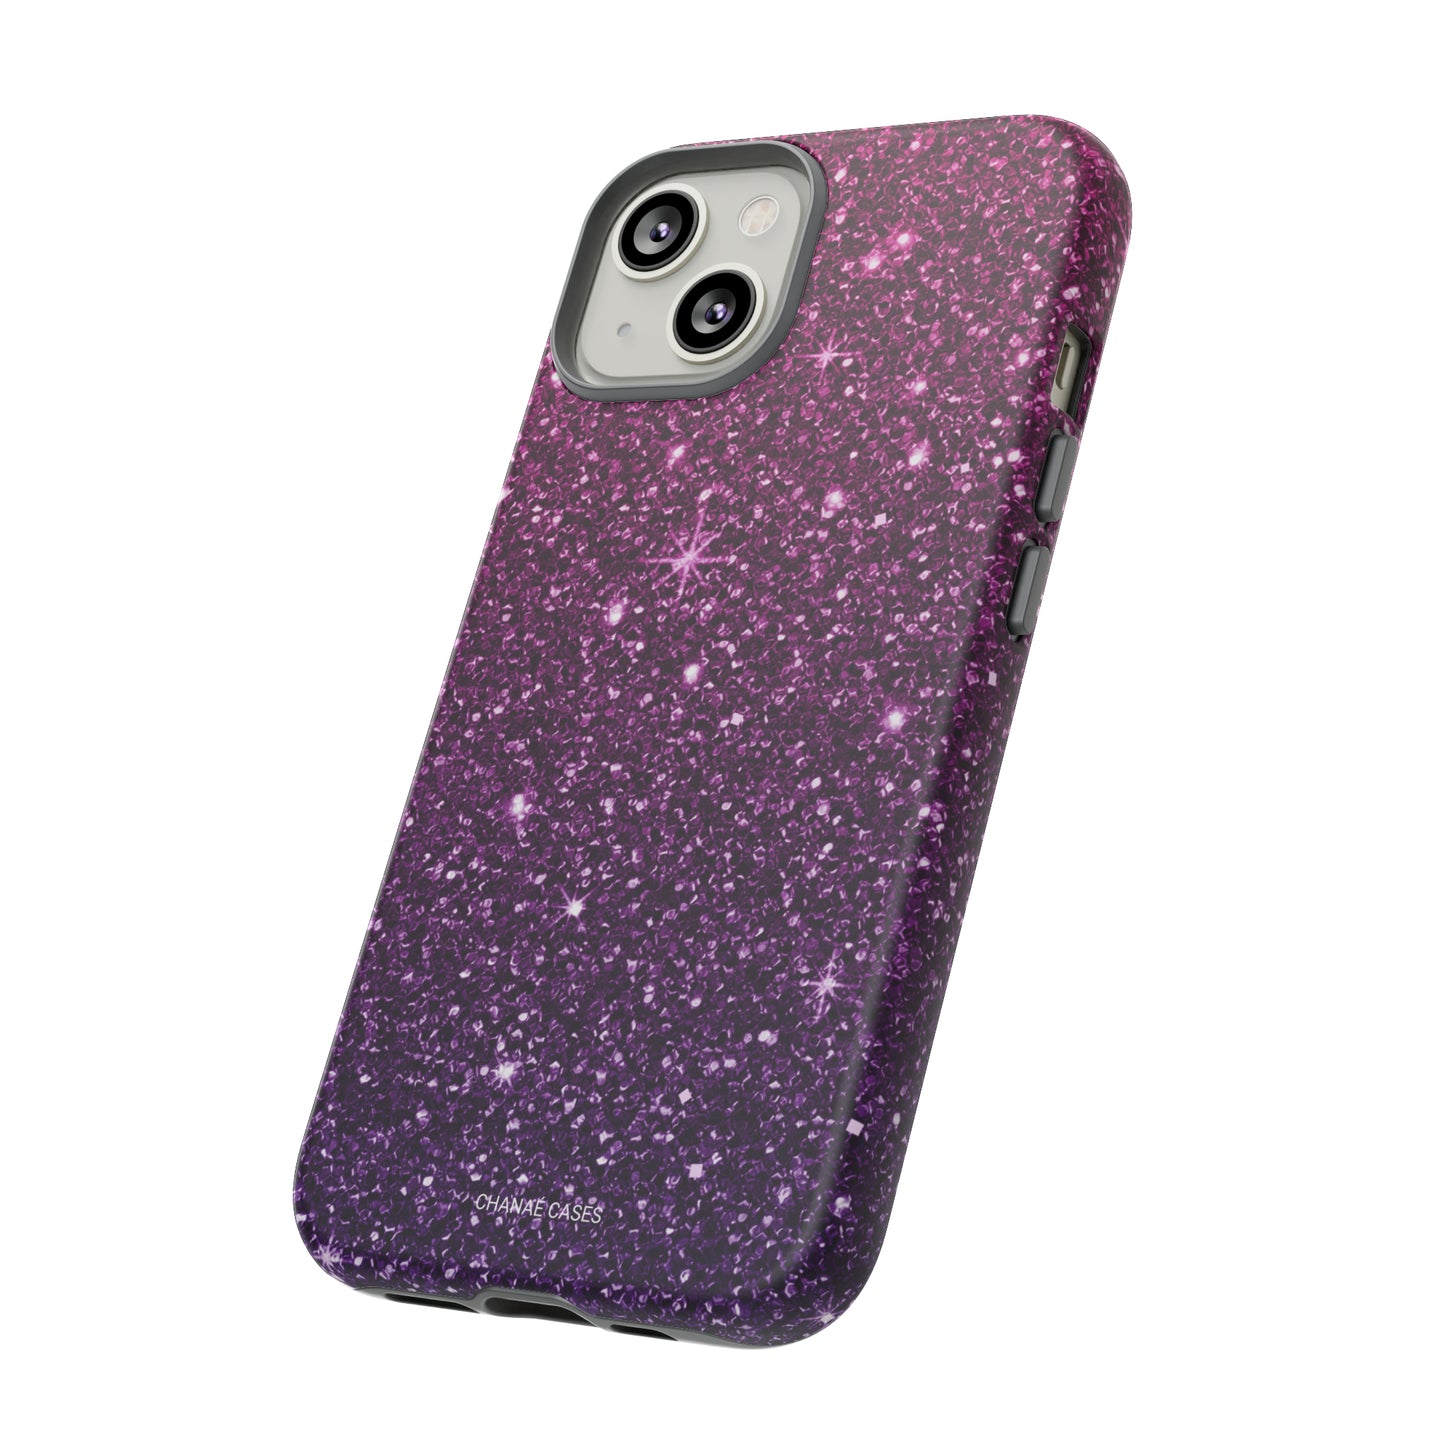 Carnival Diva iPhone "Tough" Case (Purple)